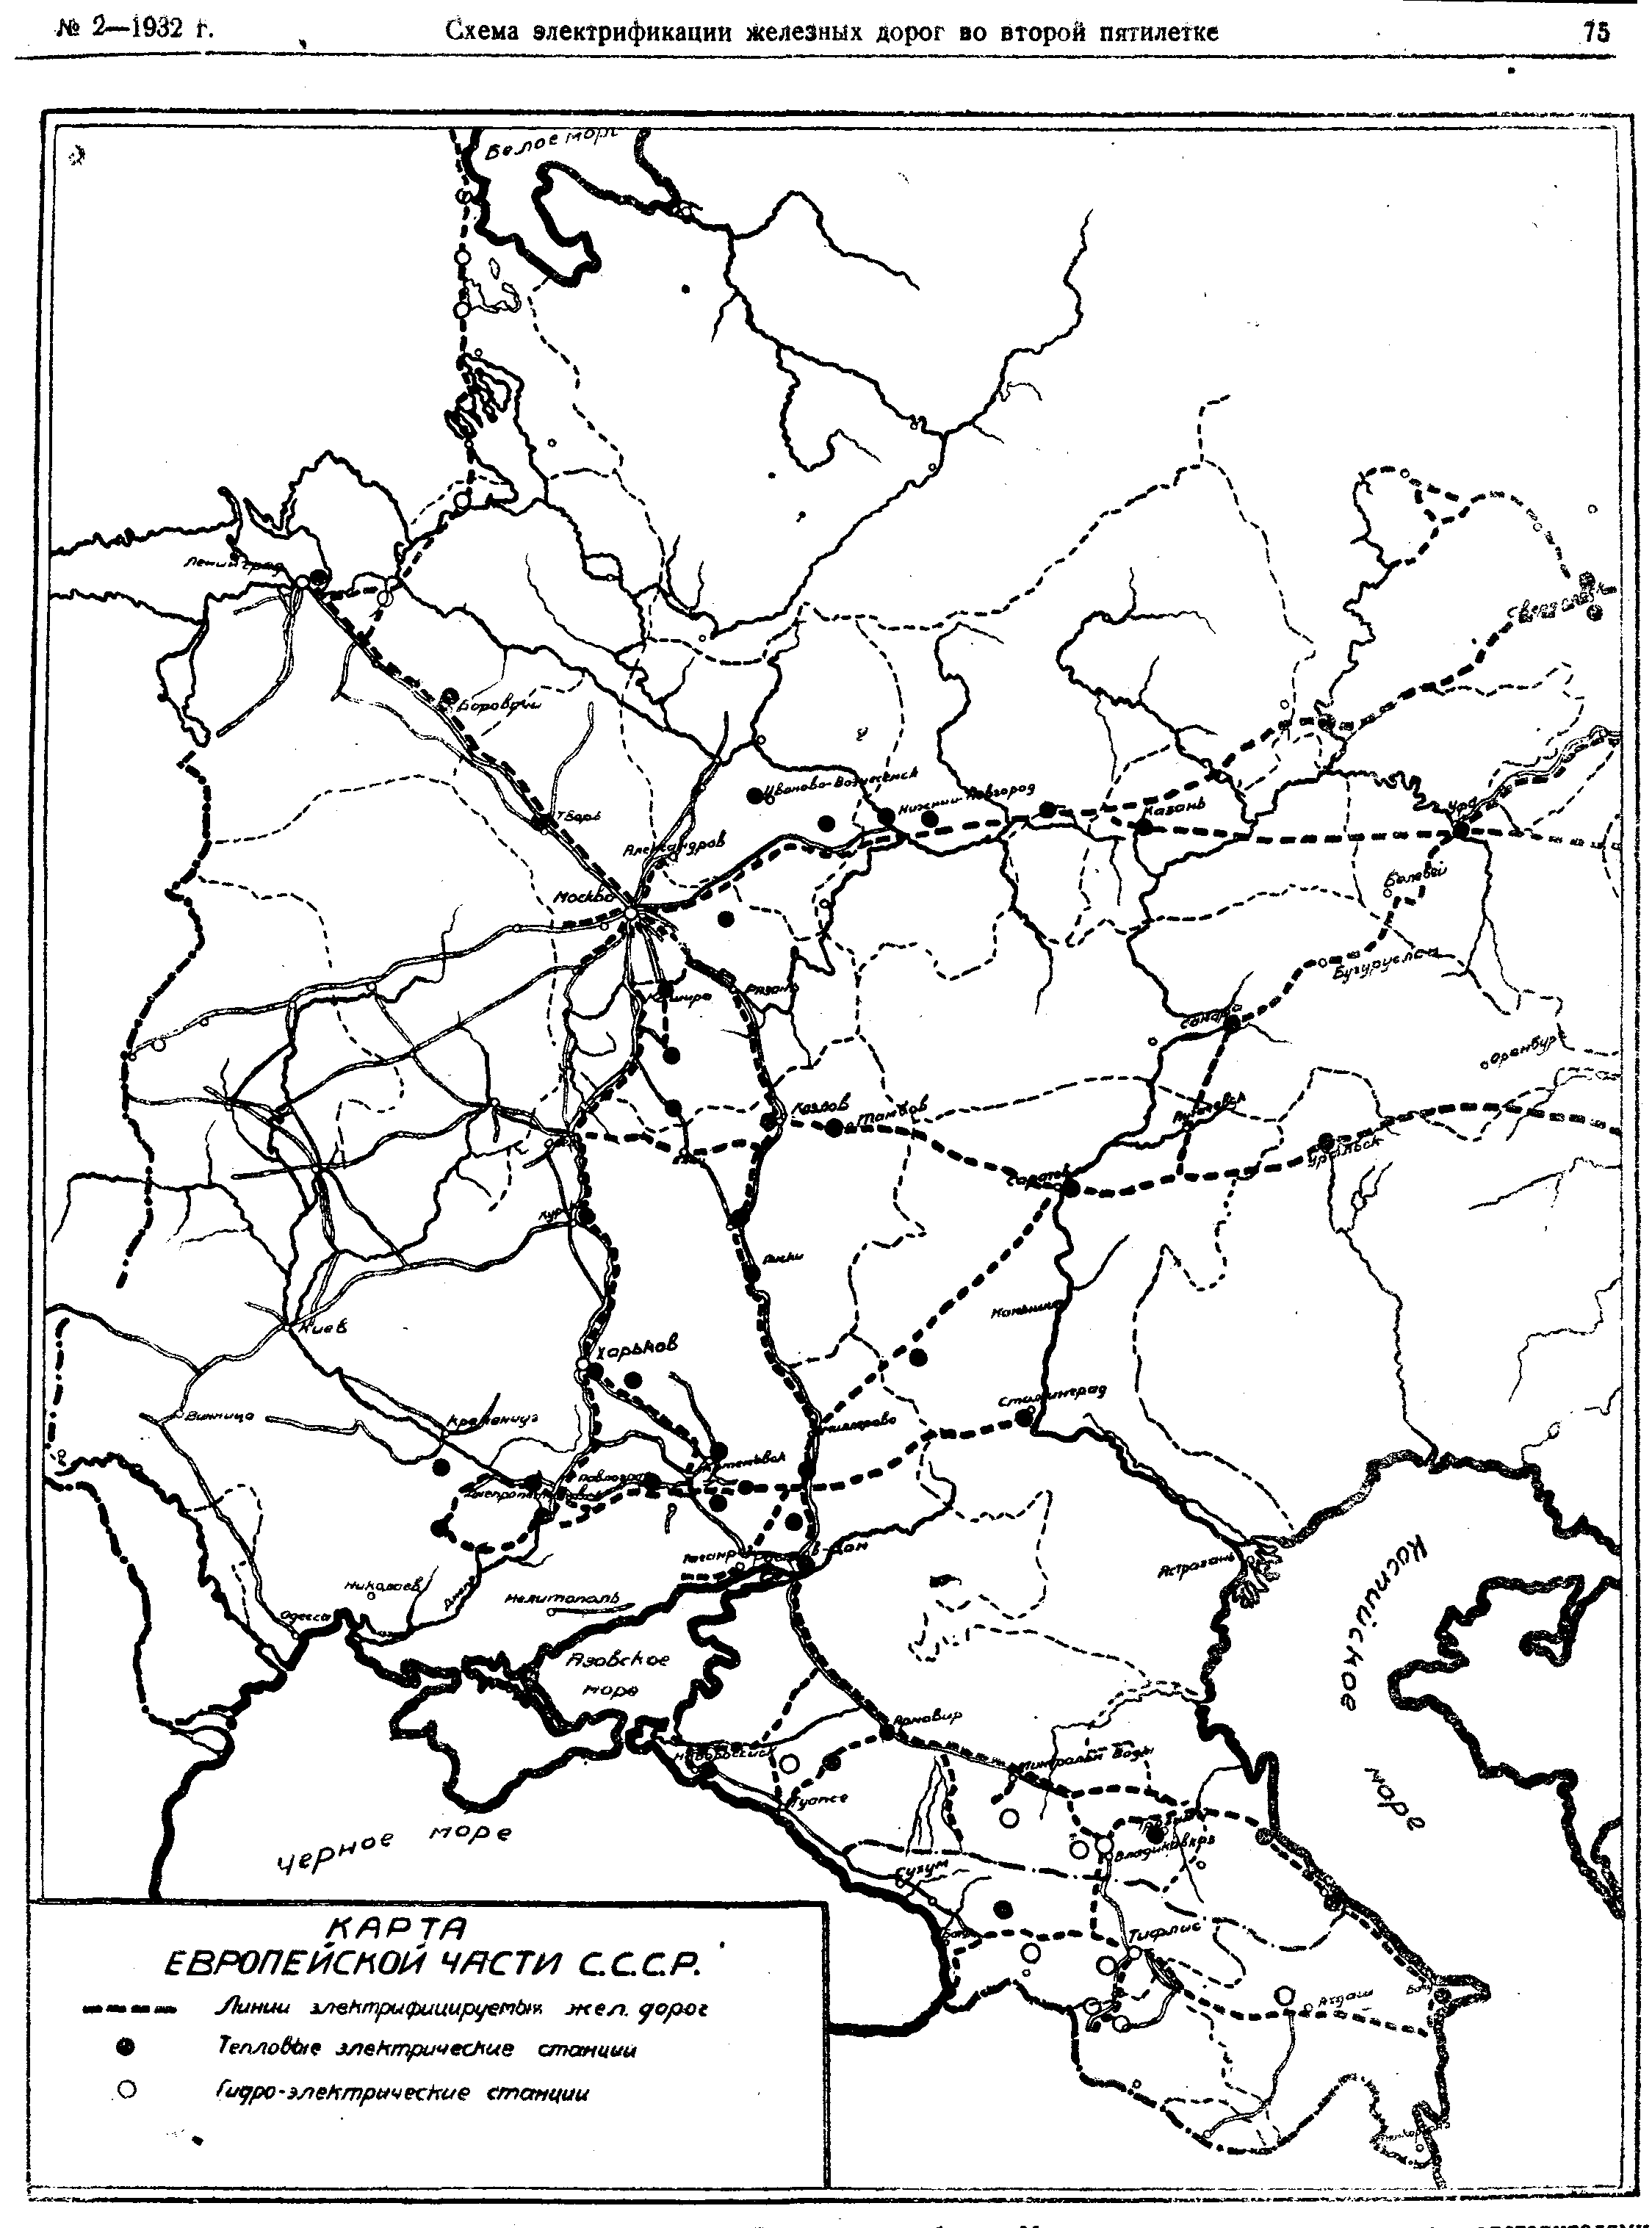 Карта дорог европейской россии